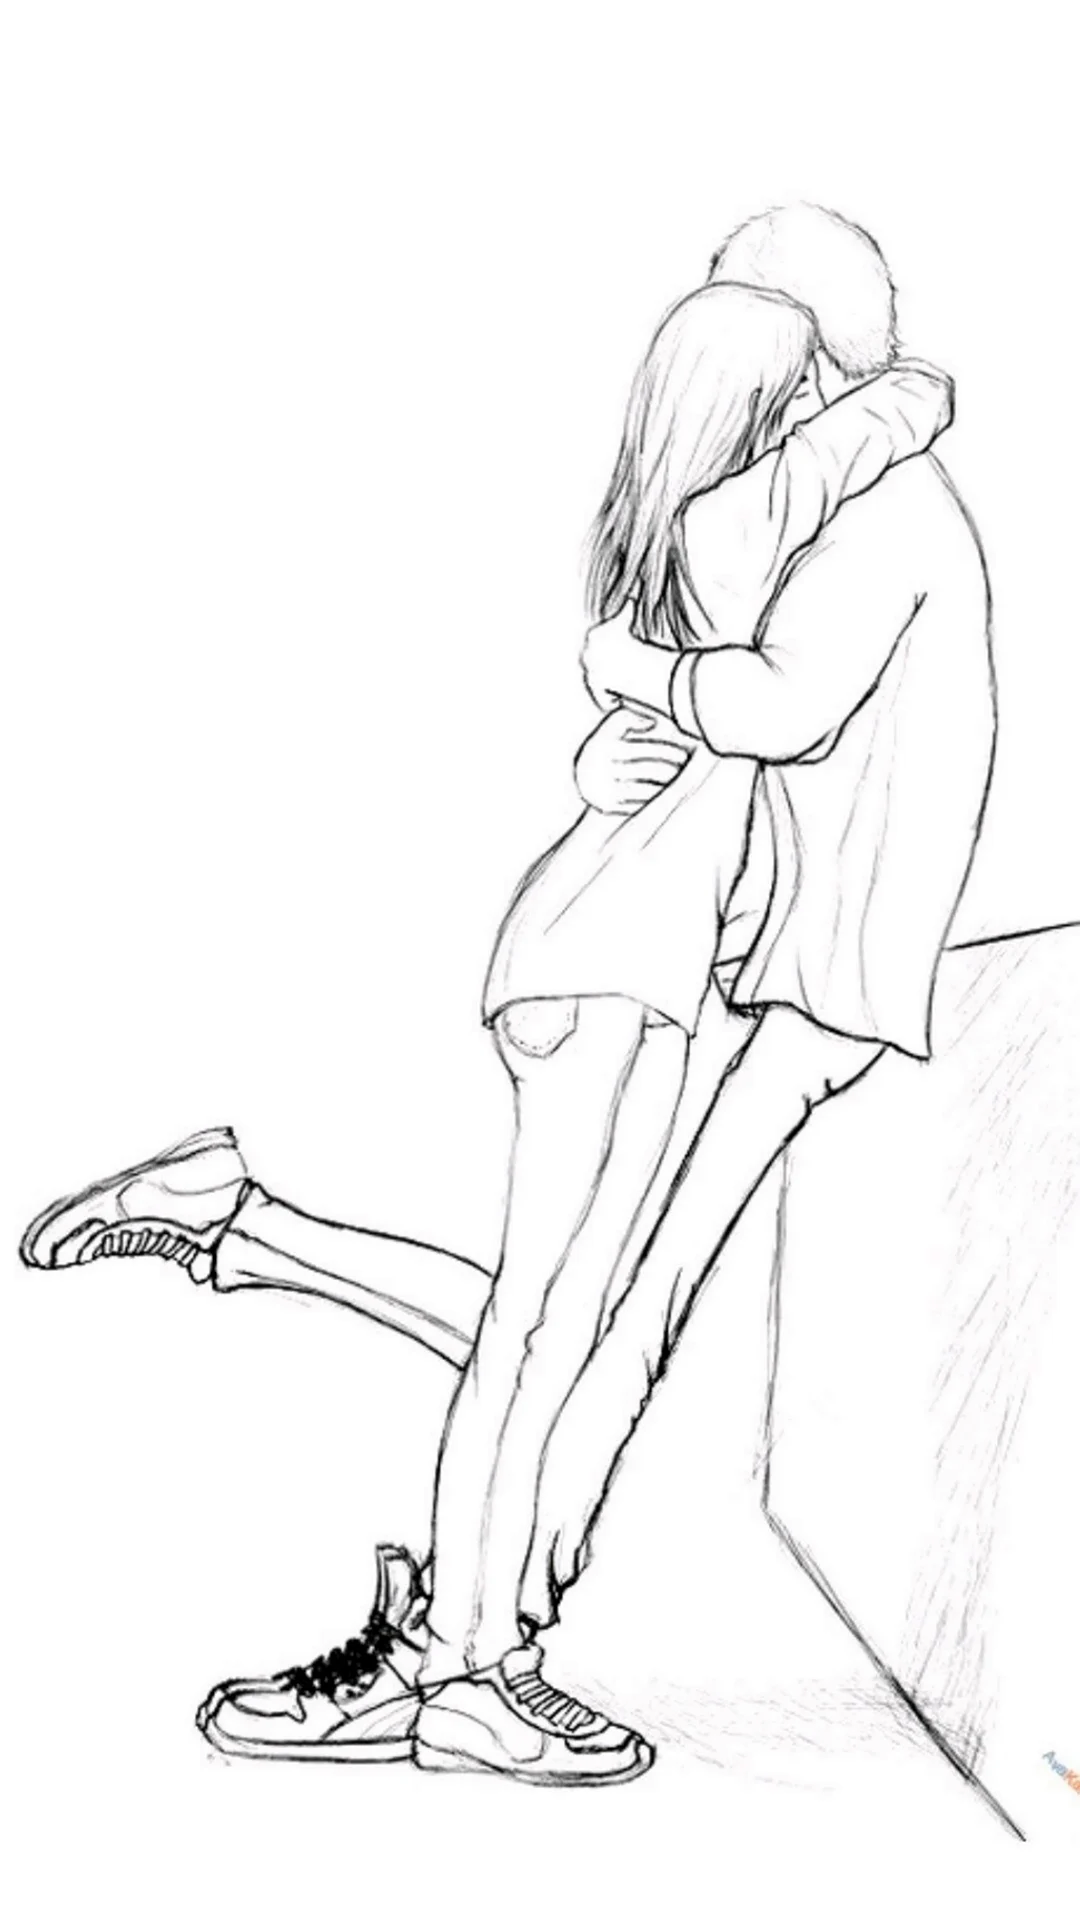 Парень и девушка рисунок карандашом для срисовки. Для срисовки